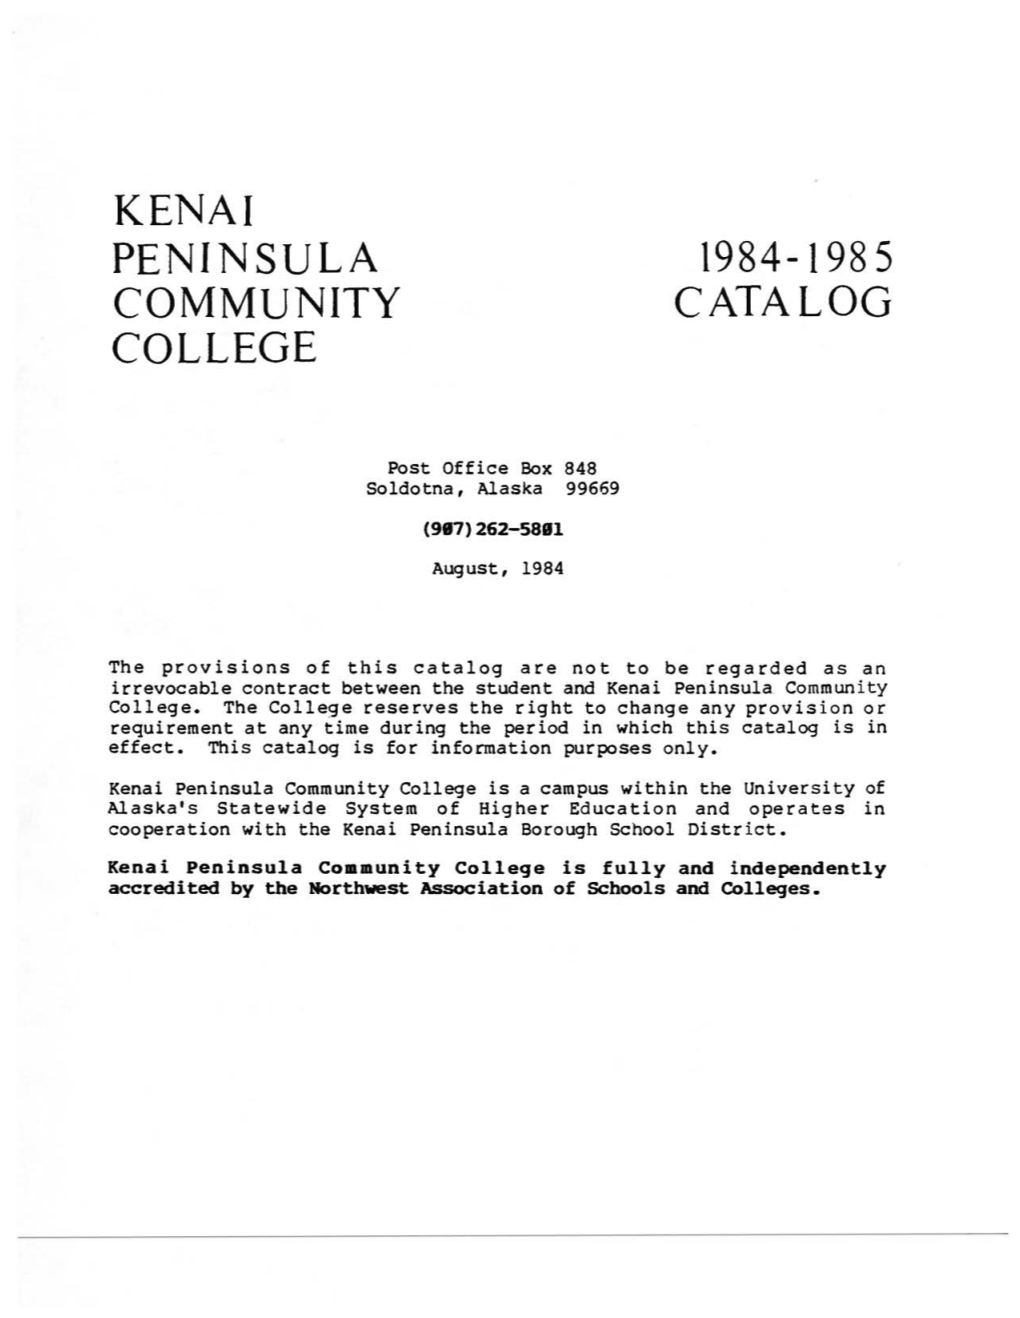 Kenai Peninsula Community College